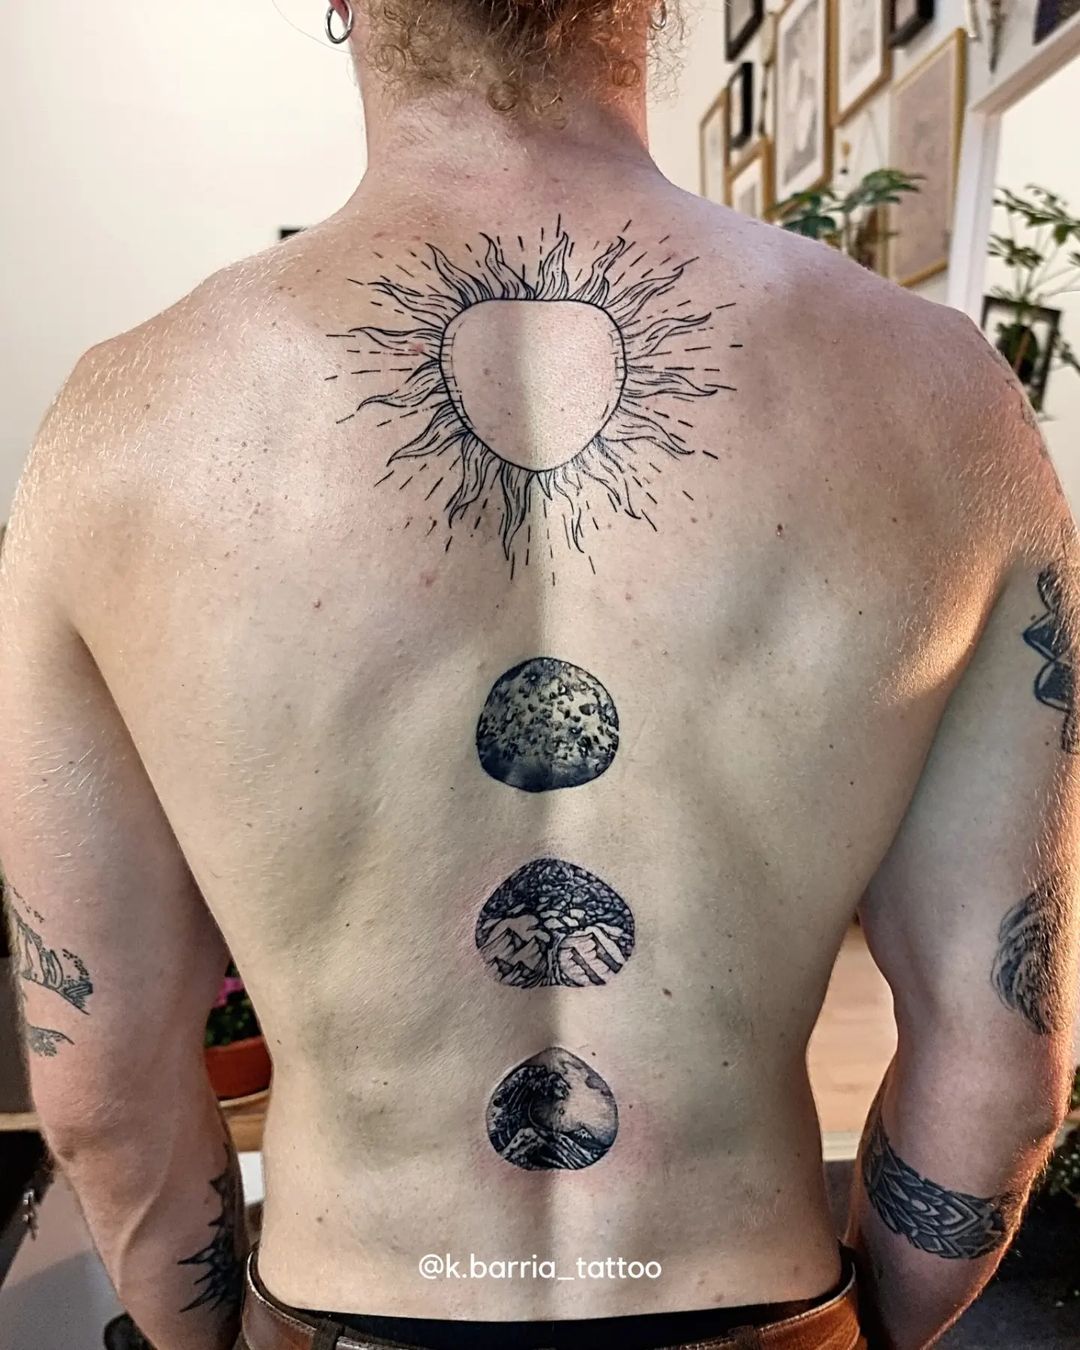 16 Poetic Moon Tattoos  Tattoodo